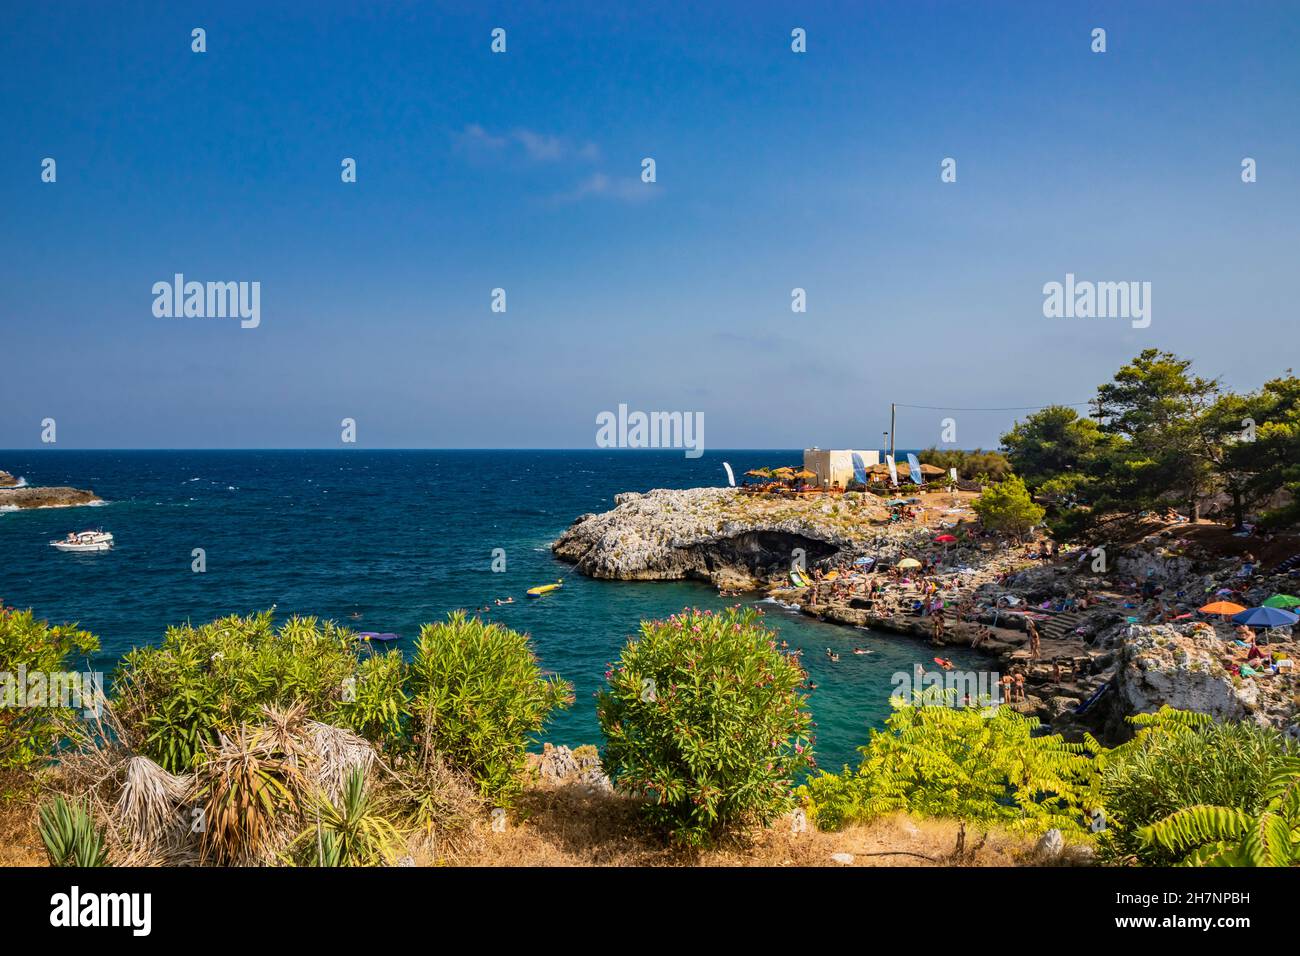 Aug 17, 2021 - Otranto, Apulien, Italien - der kleine Strand von Porto Badisco, berühmter Badeort von Salento. Touristen verbringen ihre Sommerferien. Peop Stockfoto